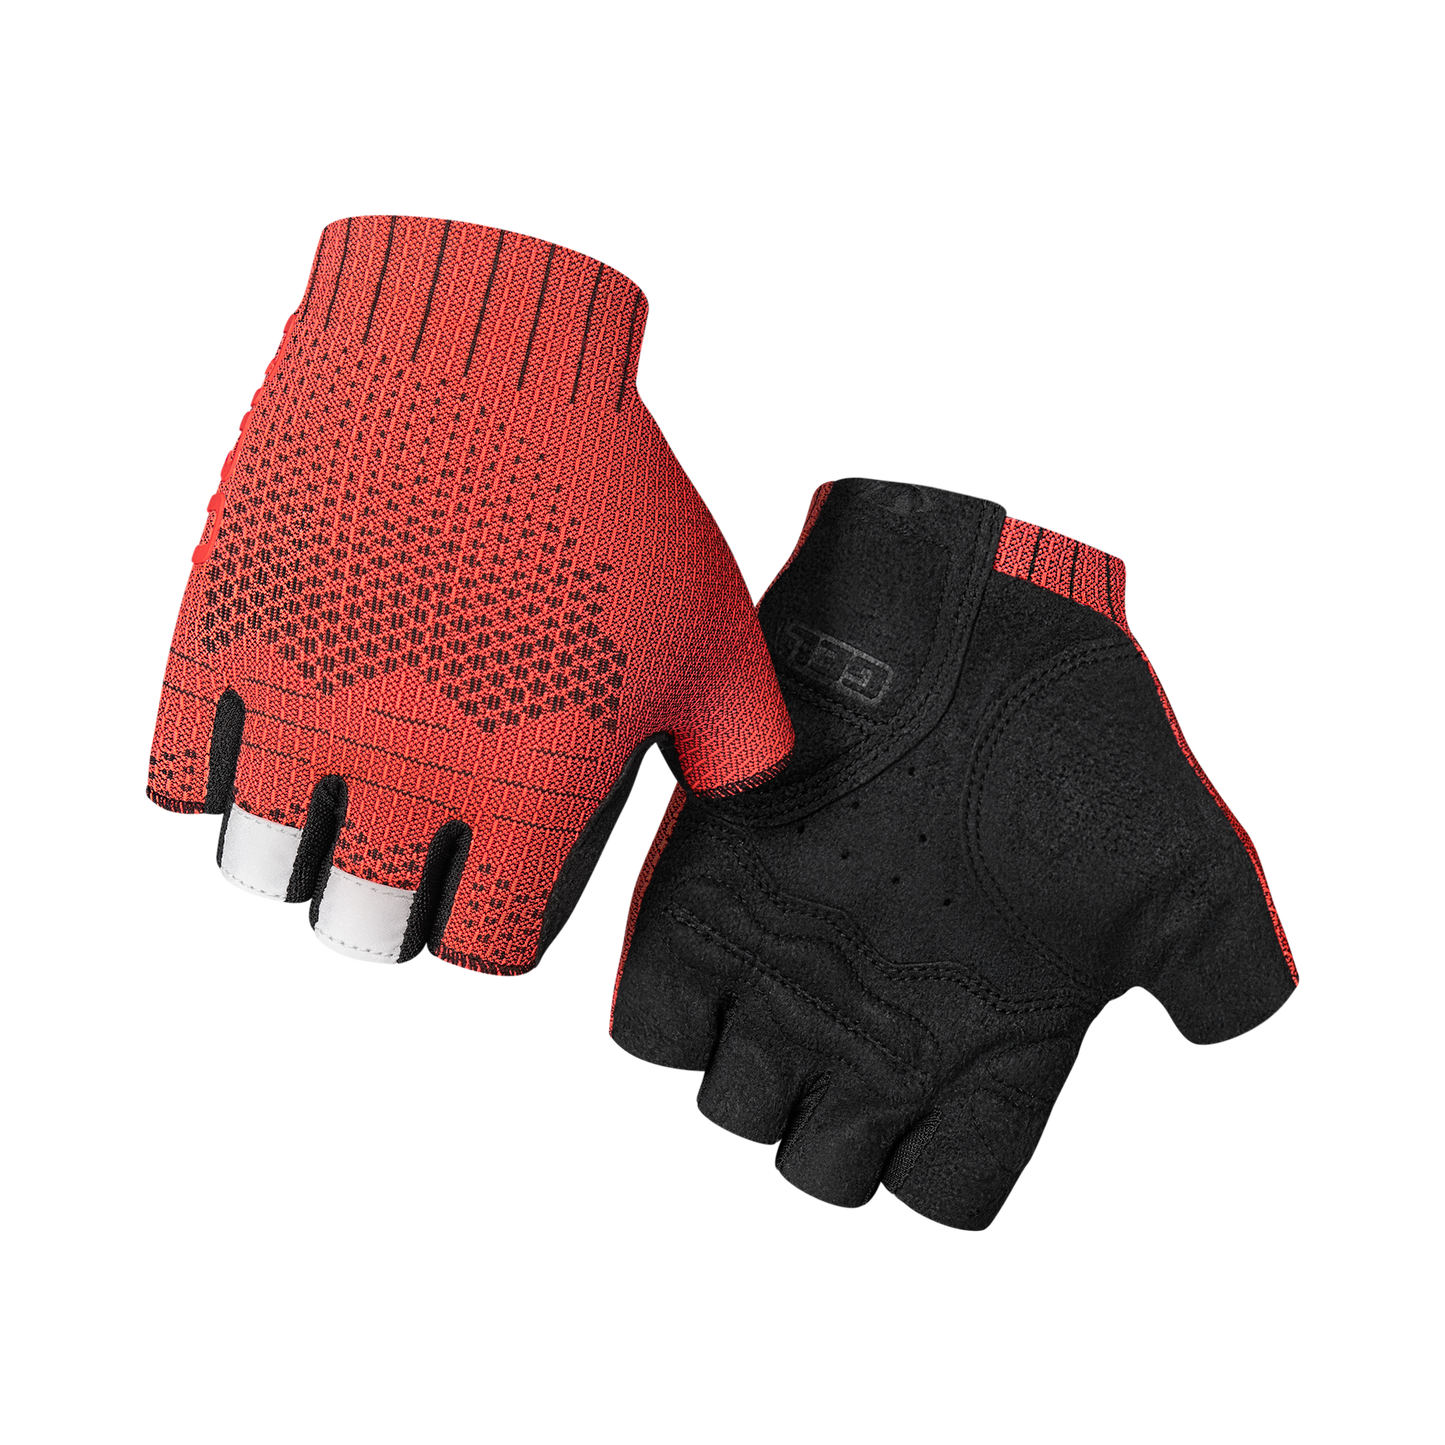 GIRO 2022 XNETIC ROAD short finger gloves